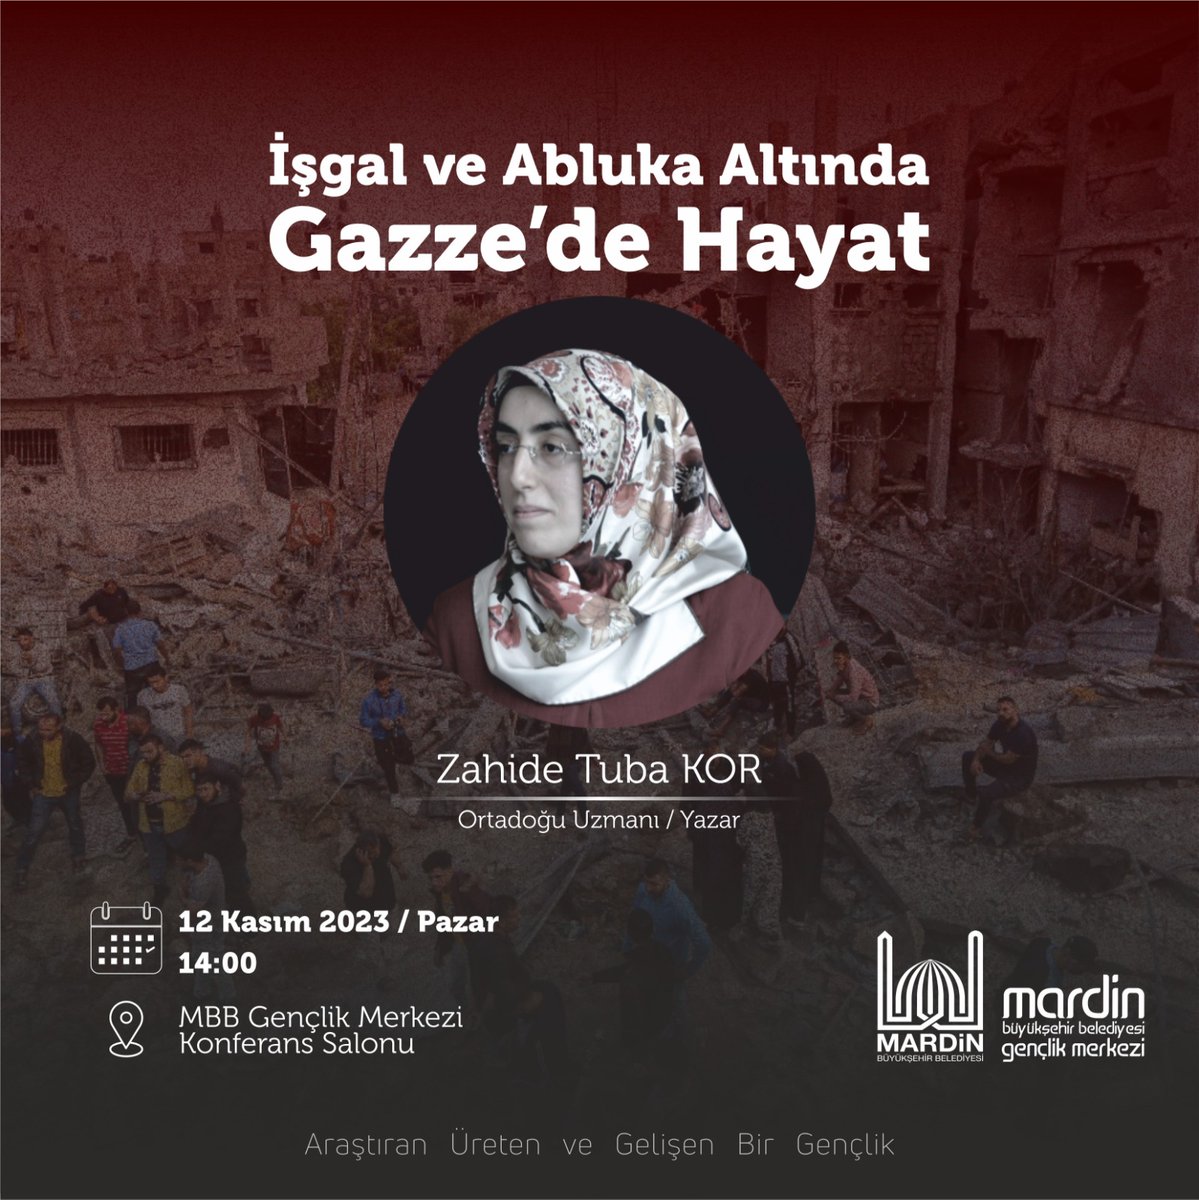 “İşgal ve Abluka Altında Gazze’de Hayat” konulu söyleşisi ile Ortadoğu Araştırmacısı / Yazar Zahide Tuba Kor 📆 12 Kasım Pazar ⏰ 14.00' da 📍 MBB Gençlik Merkezi Konferans Salonu'nda sizlerle olacak. Tüm halkımızı bekleriz. @tuncay_akkoyun @MardinBuyukshr